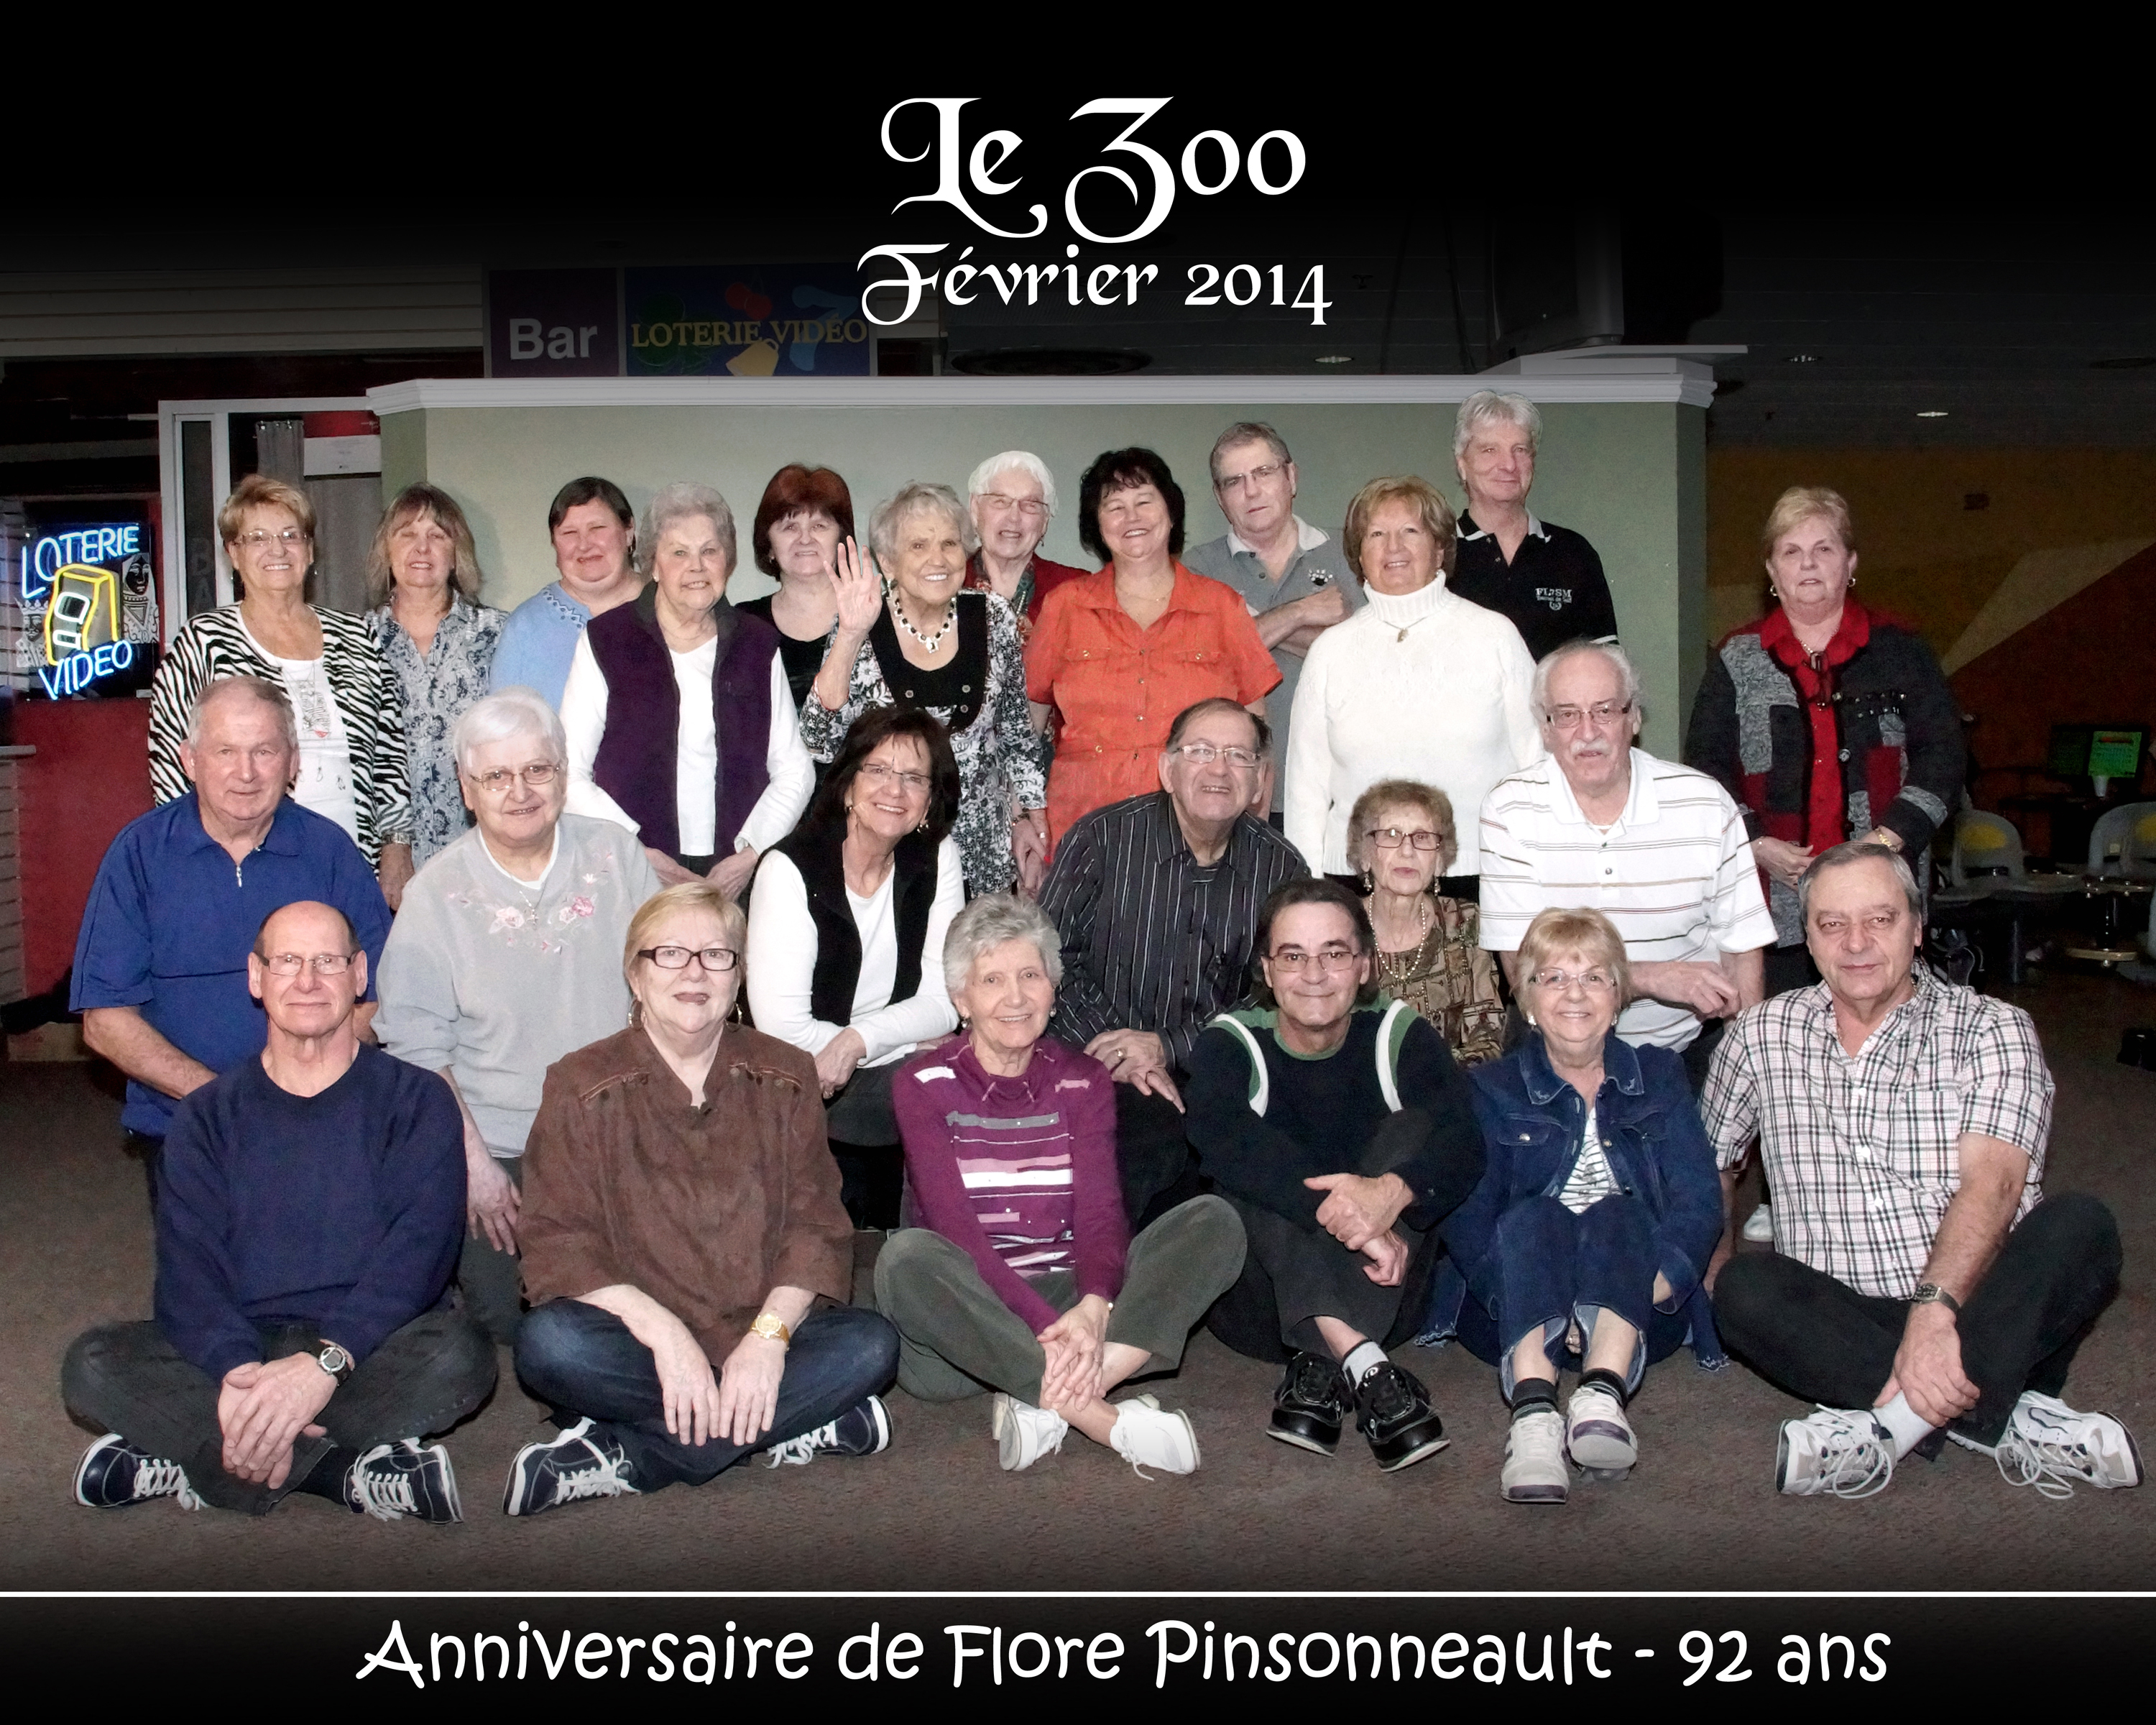 Photo ligue "Le Zoo" - Anniversaire Flore Pinsonneault